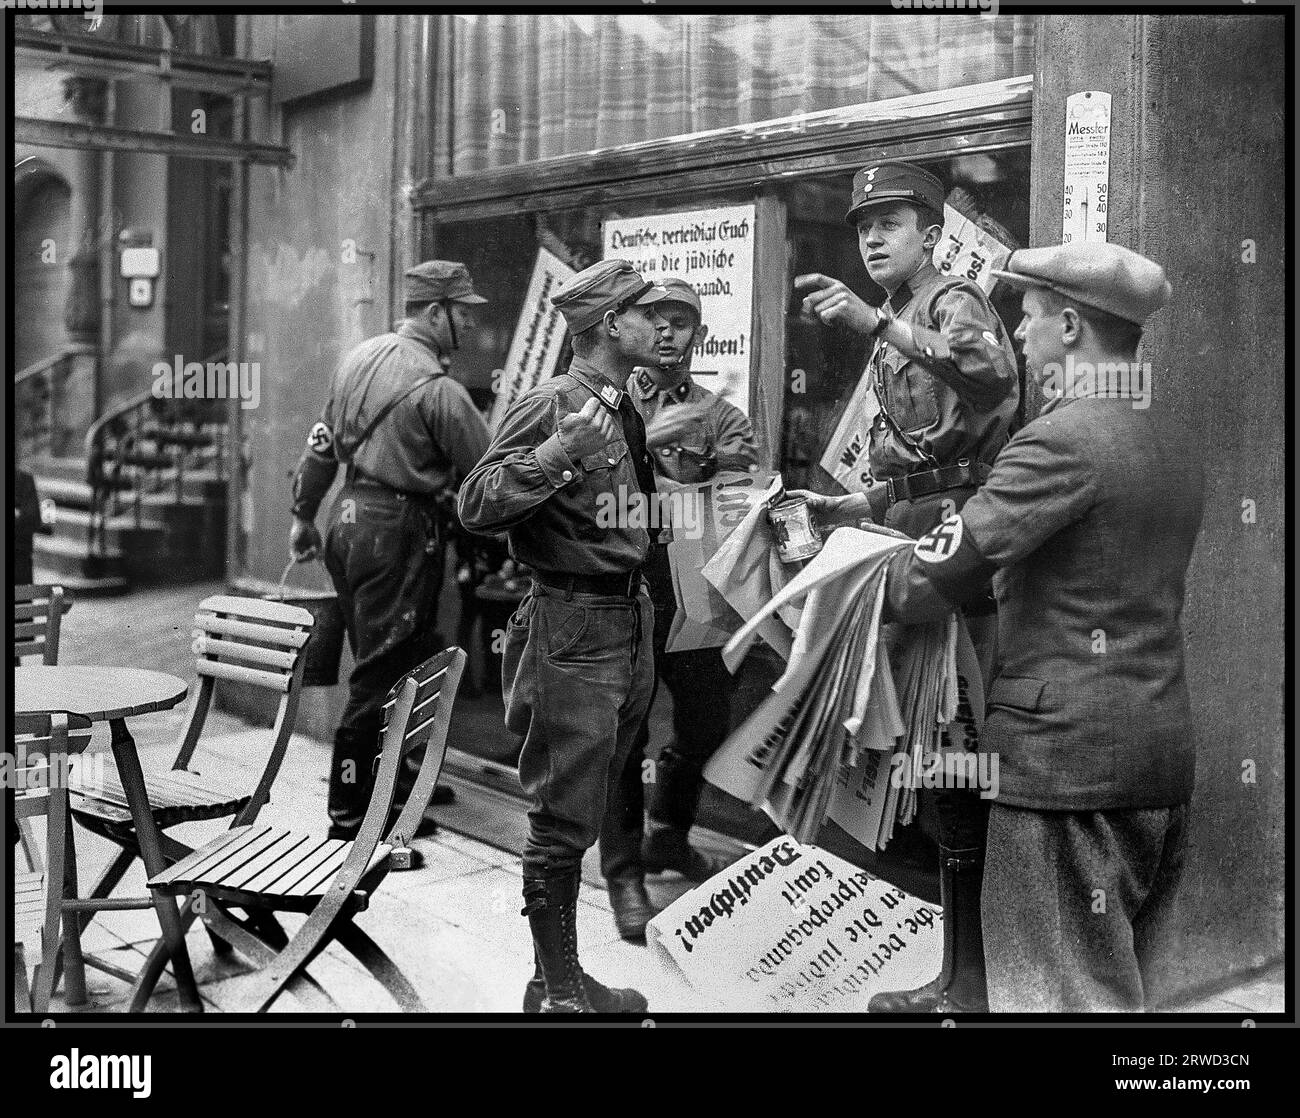 BOYKOTT von jüdischen Geschäften in den 1930er Jahren mit paramilitärischen uniformierten Vollstreckern der Sturmabteilung, die Hakenkreuz-Armbänder tragen, um ein jüdisches Verbot des Boykotts zu gewährleisten, indem antijüdische antisemitische Plakate in Berlin-Nazideutschland veröffentlicht werden Stockfoto